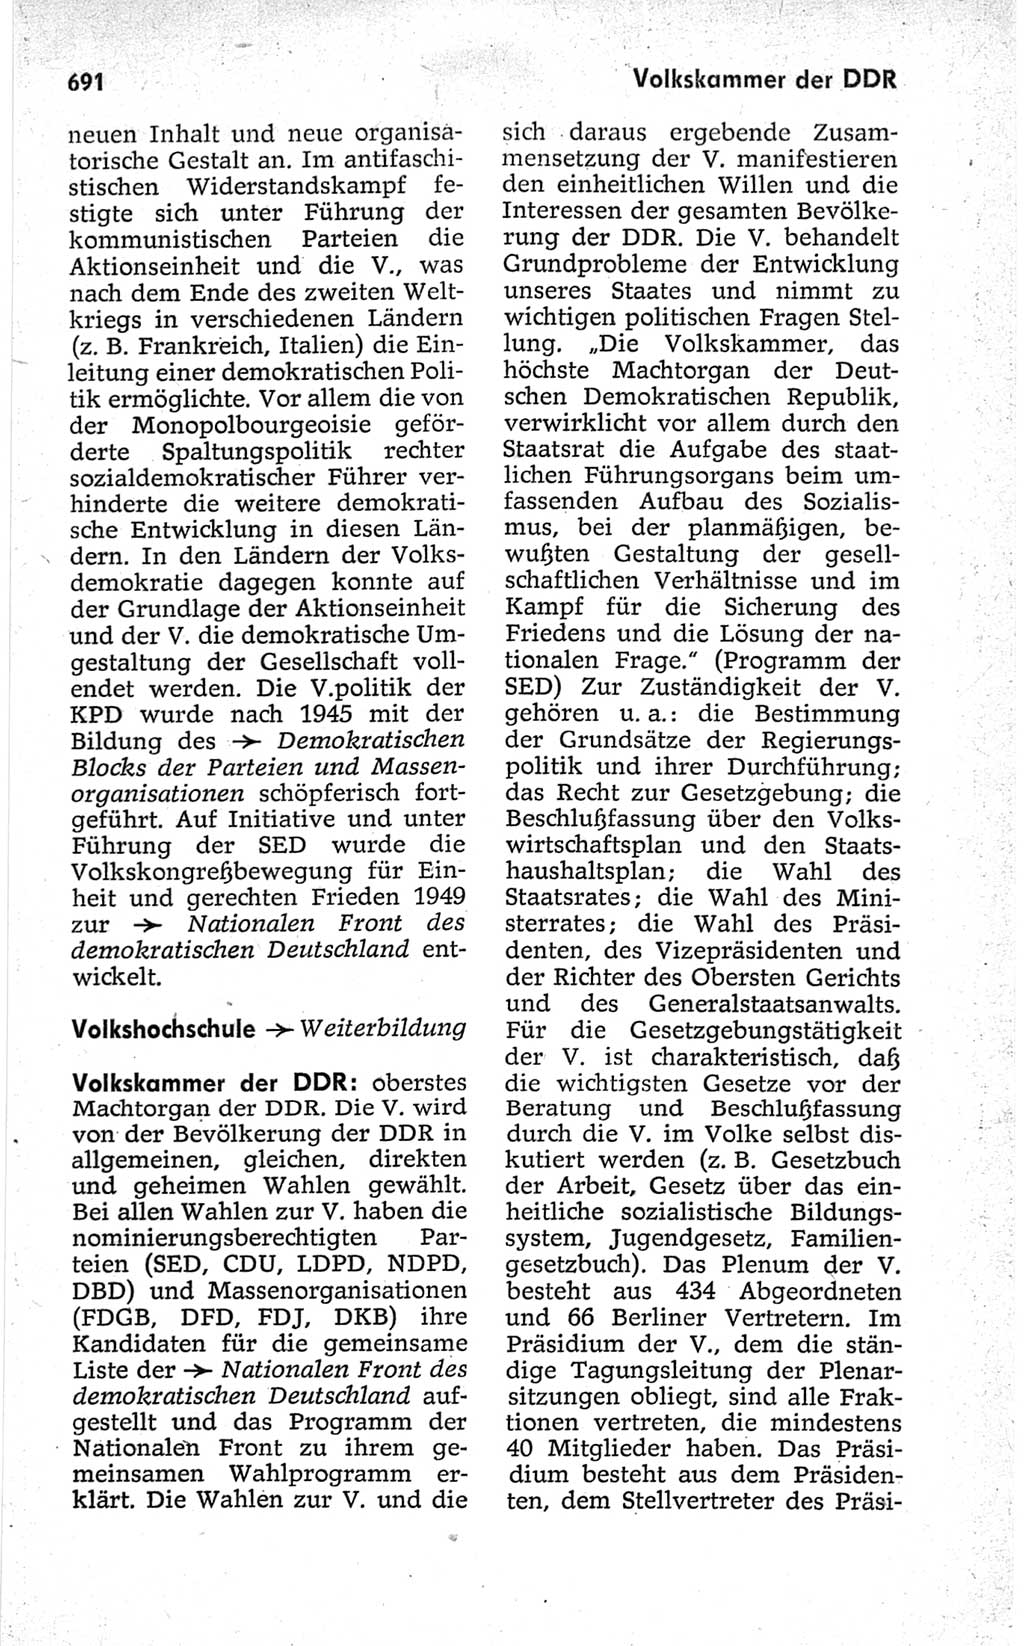 Kleines politisches Wörterbuch [Deutsche Demokratische Republik (DDR)] 1967, Seite 691 (Kl. pol. Wb. DDR 1967, S. 691)